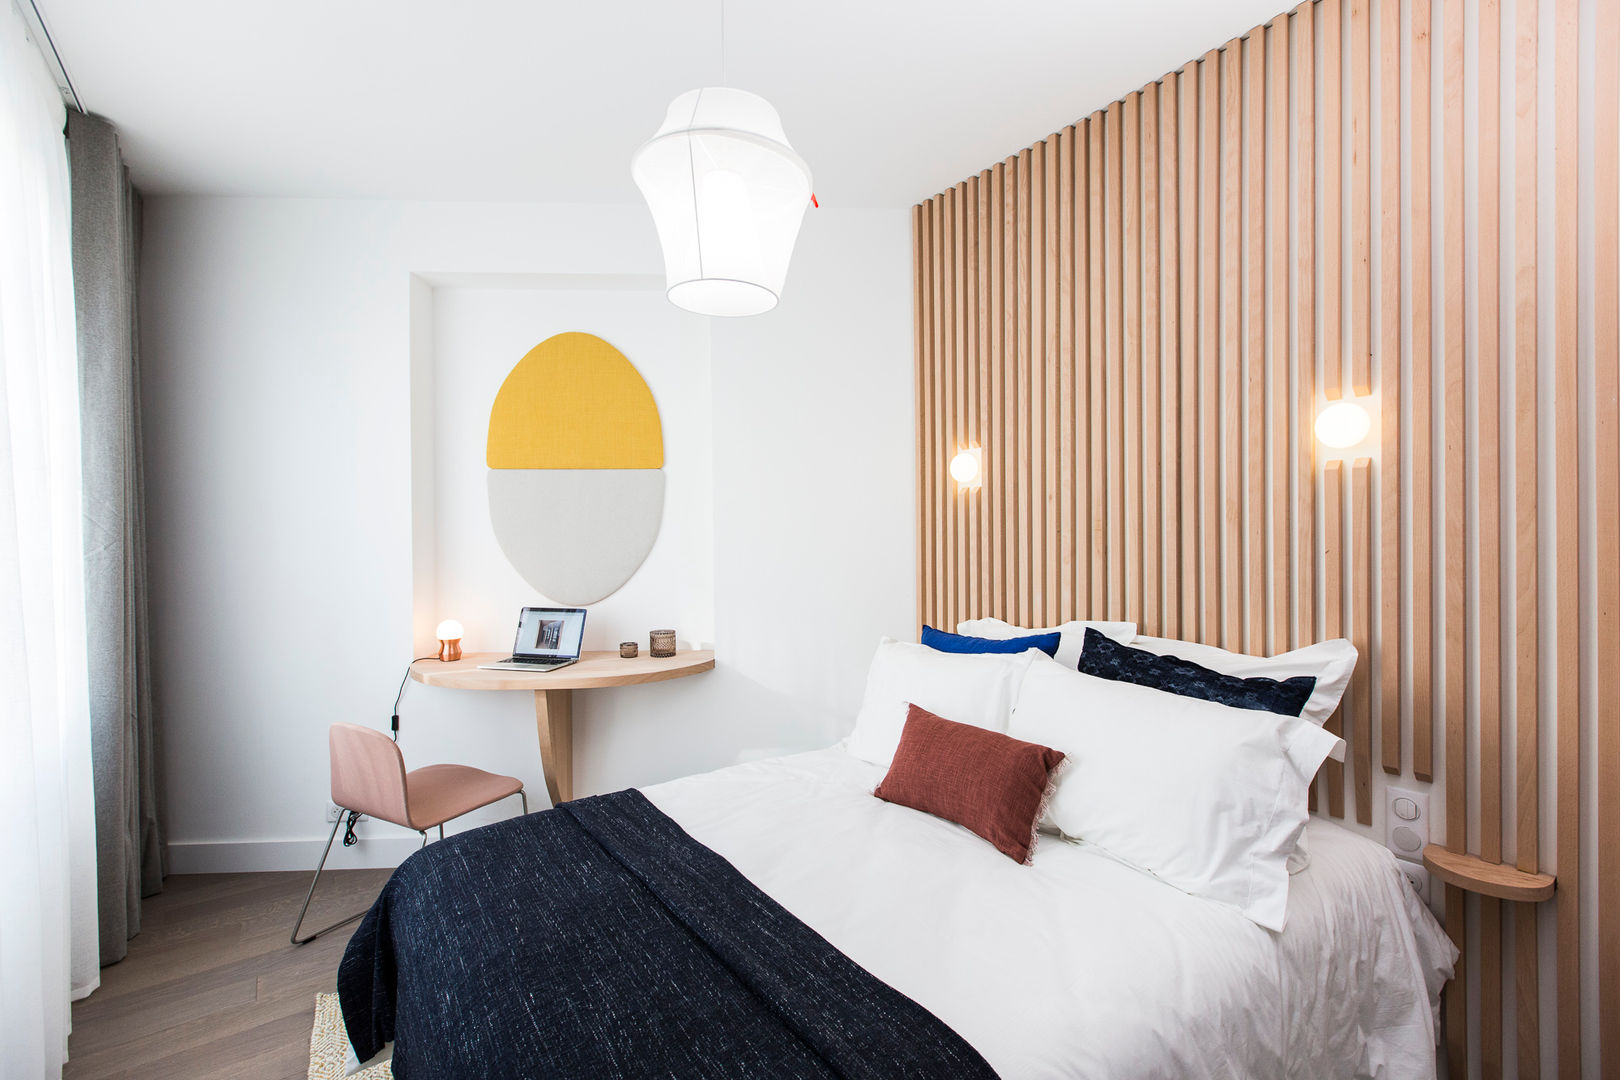 Appartement Badia Tikki, Agence hivoa Agence hivoa Dormitorios de estilo moderno